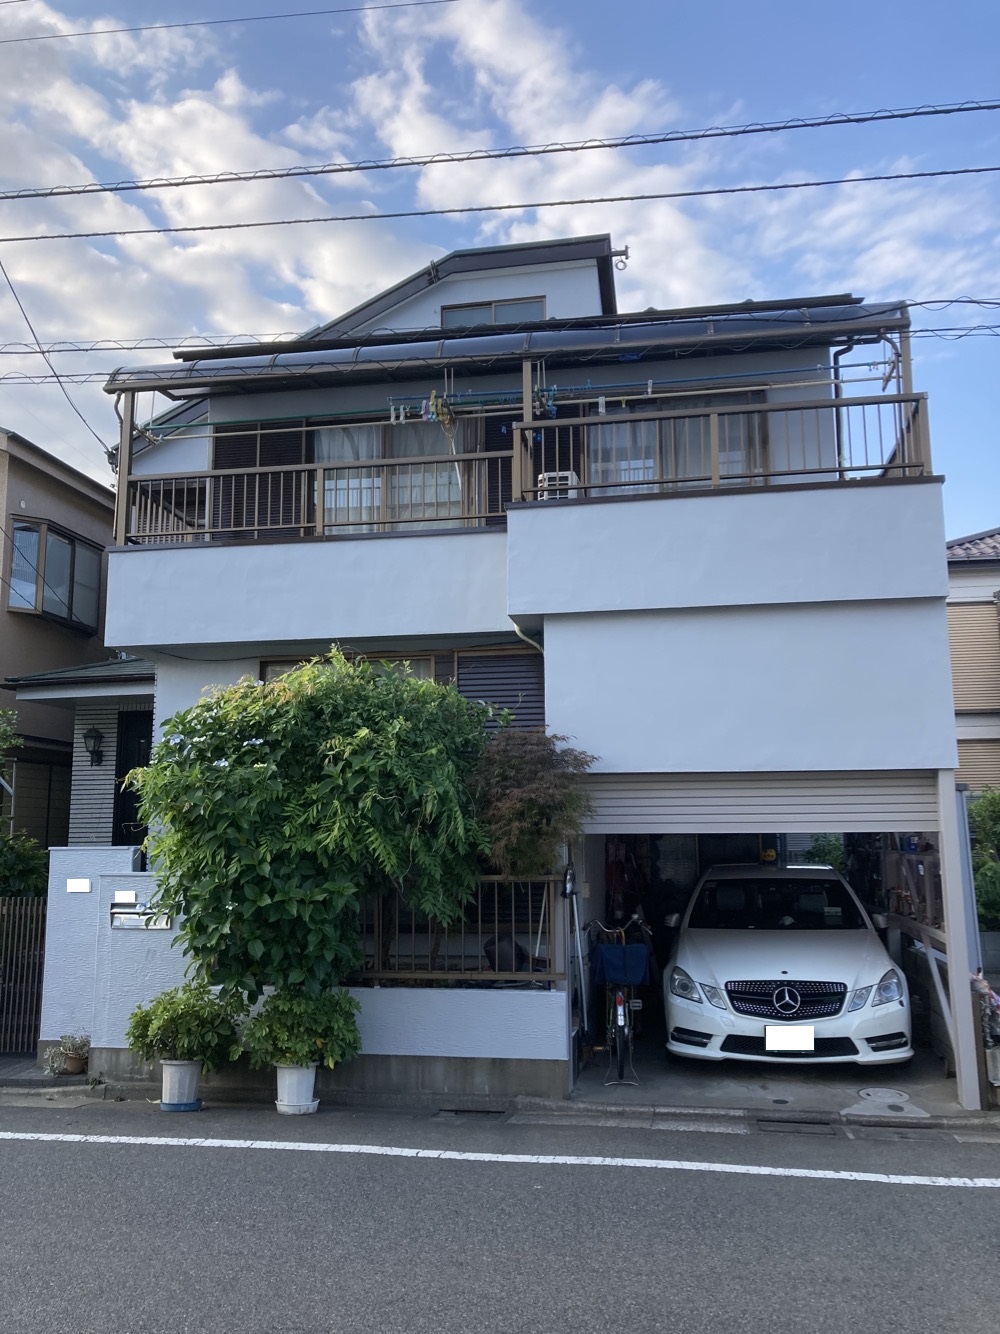 【東京都足立区】T様邸外壁屋根塗装工事が完了しました。日本ペイント 水性サーモアイウォールsi 画像